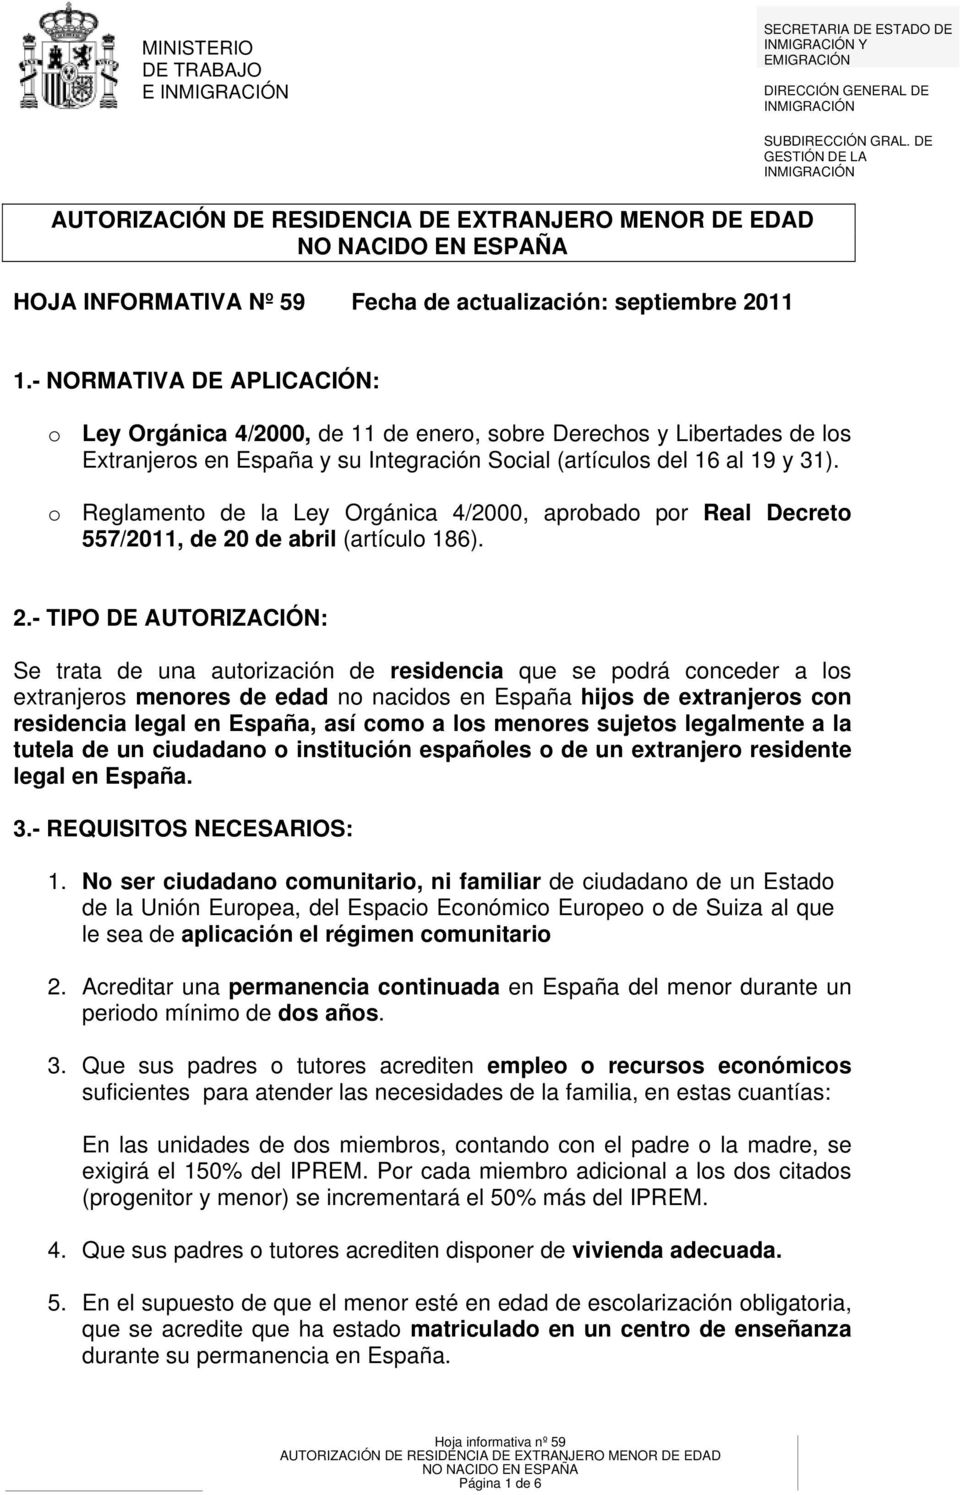 - NORMATIVA DE APLICACIÓN: o Ley Orgánica 4/2000, de 11 de enero, sobre Derechos y Libertades de los Extranjeros en España y su Integración Social (artículos del 16 al 19 y 31).